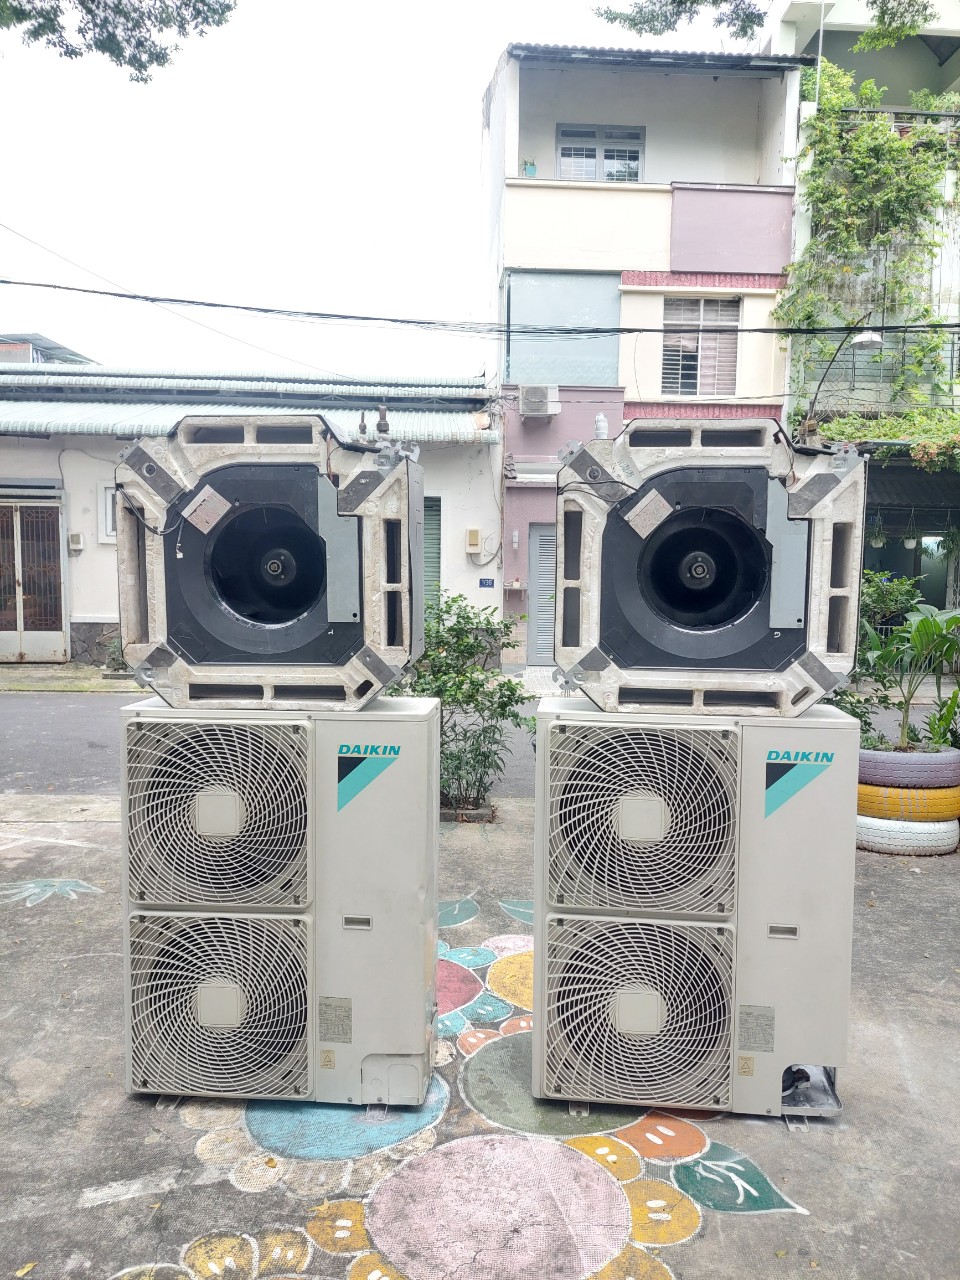 Thanh lý - bán máy lạnh cũ ở Tân Phú ĐN‎ - Quý khách có thể tham khảo qua trang web máy lạnh cũ Tân Phú - Đồng Nai